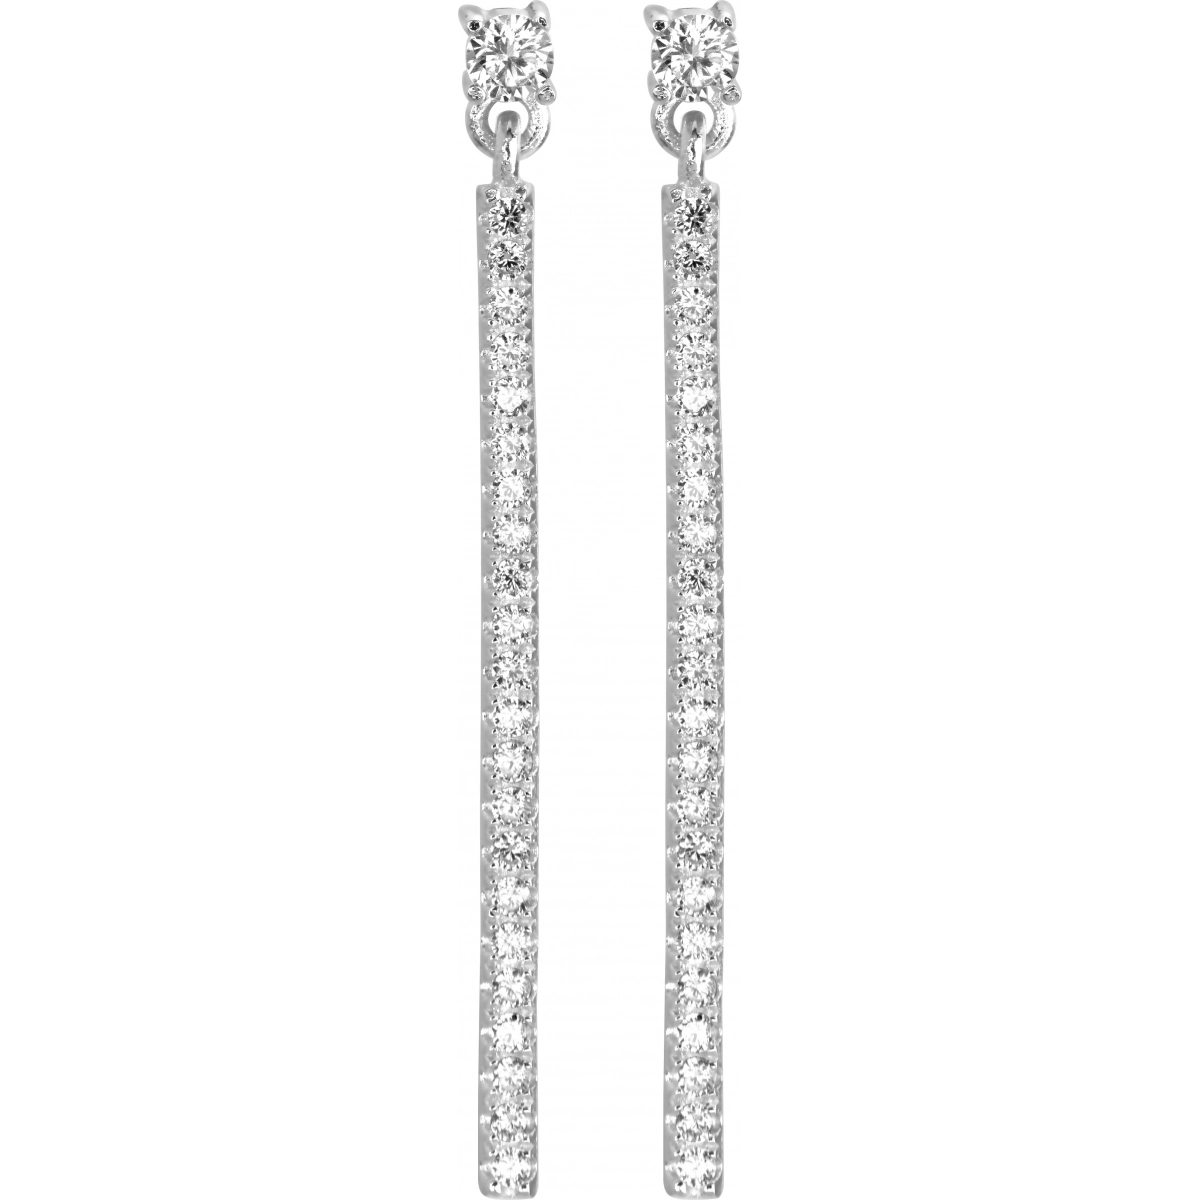 Earrings pair w. cz 925 Silver  Lua Blanca  305987.1.0